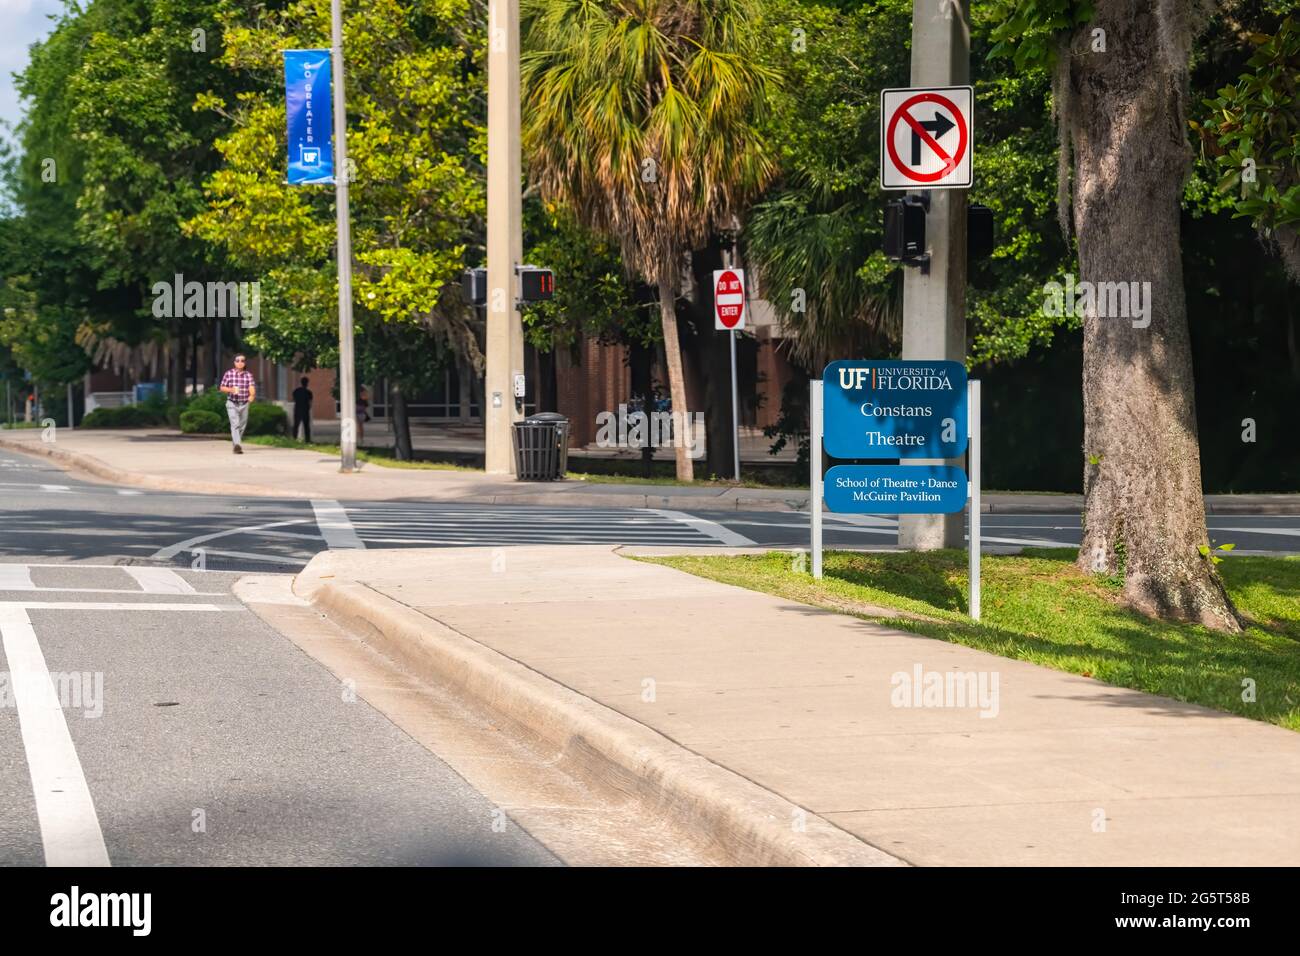 Gainesville, États-Unis - 27 avril 2018 : panneau de l'Université de Floride pour le pavillon constans Theatre and Dance mcguire sur le campus de l'Université de Floride avec des étudiants marchant sur si Banque D'Images